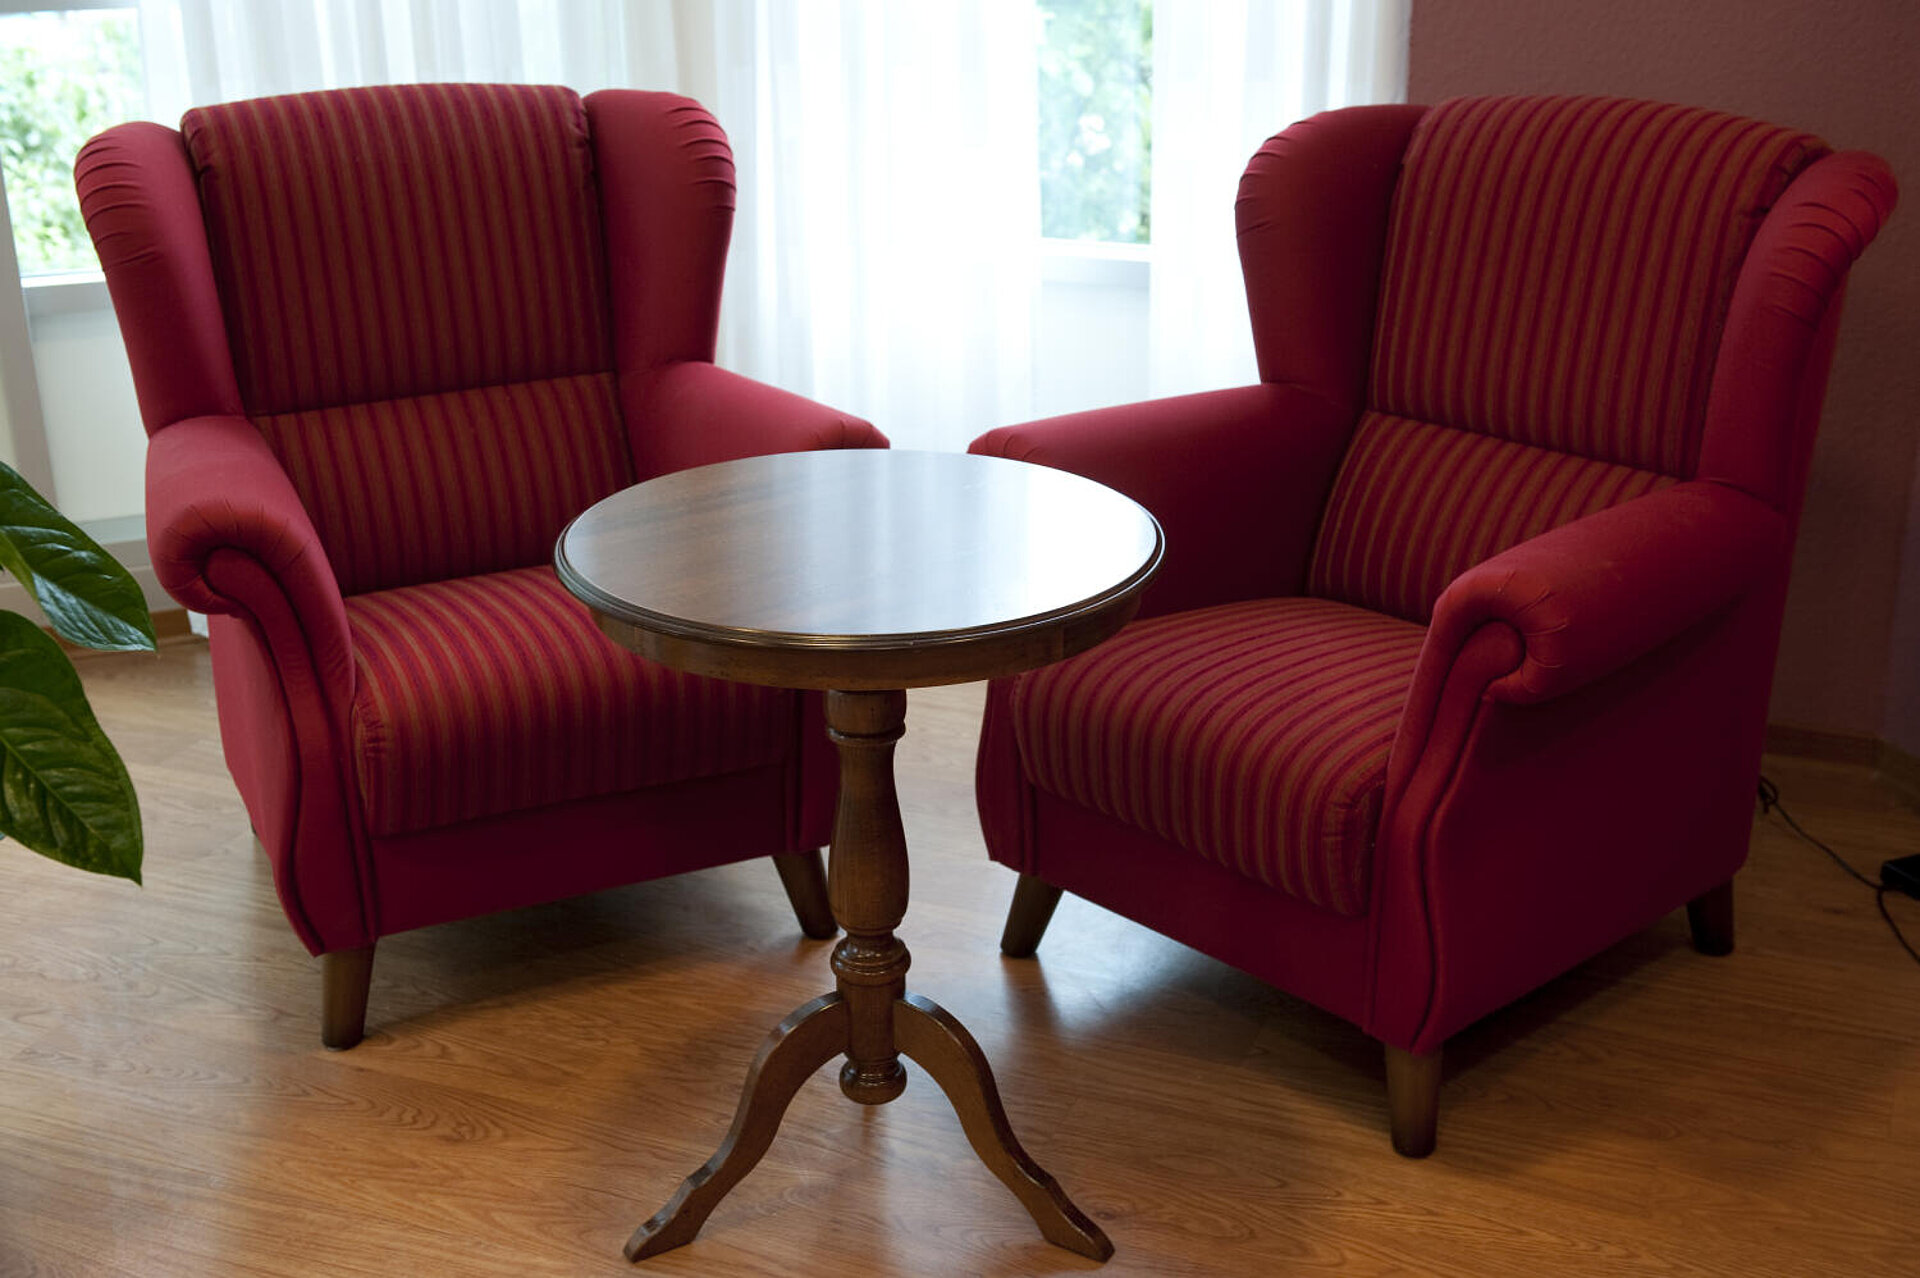 In einer Zimmerecke stehen um einen kleinen, runden, leeren Tisch zwei rote Plüschsessel.